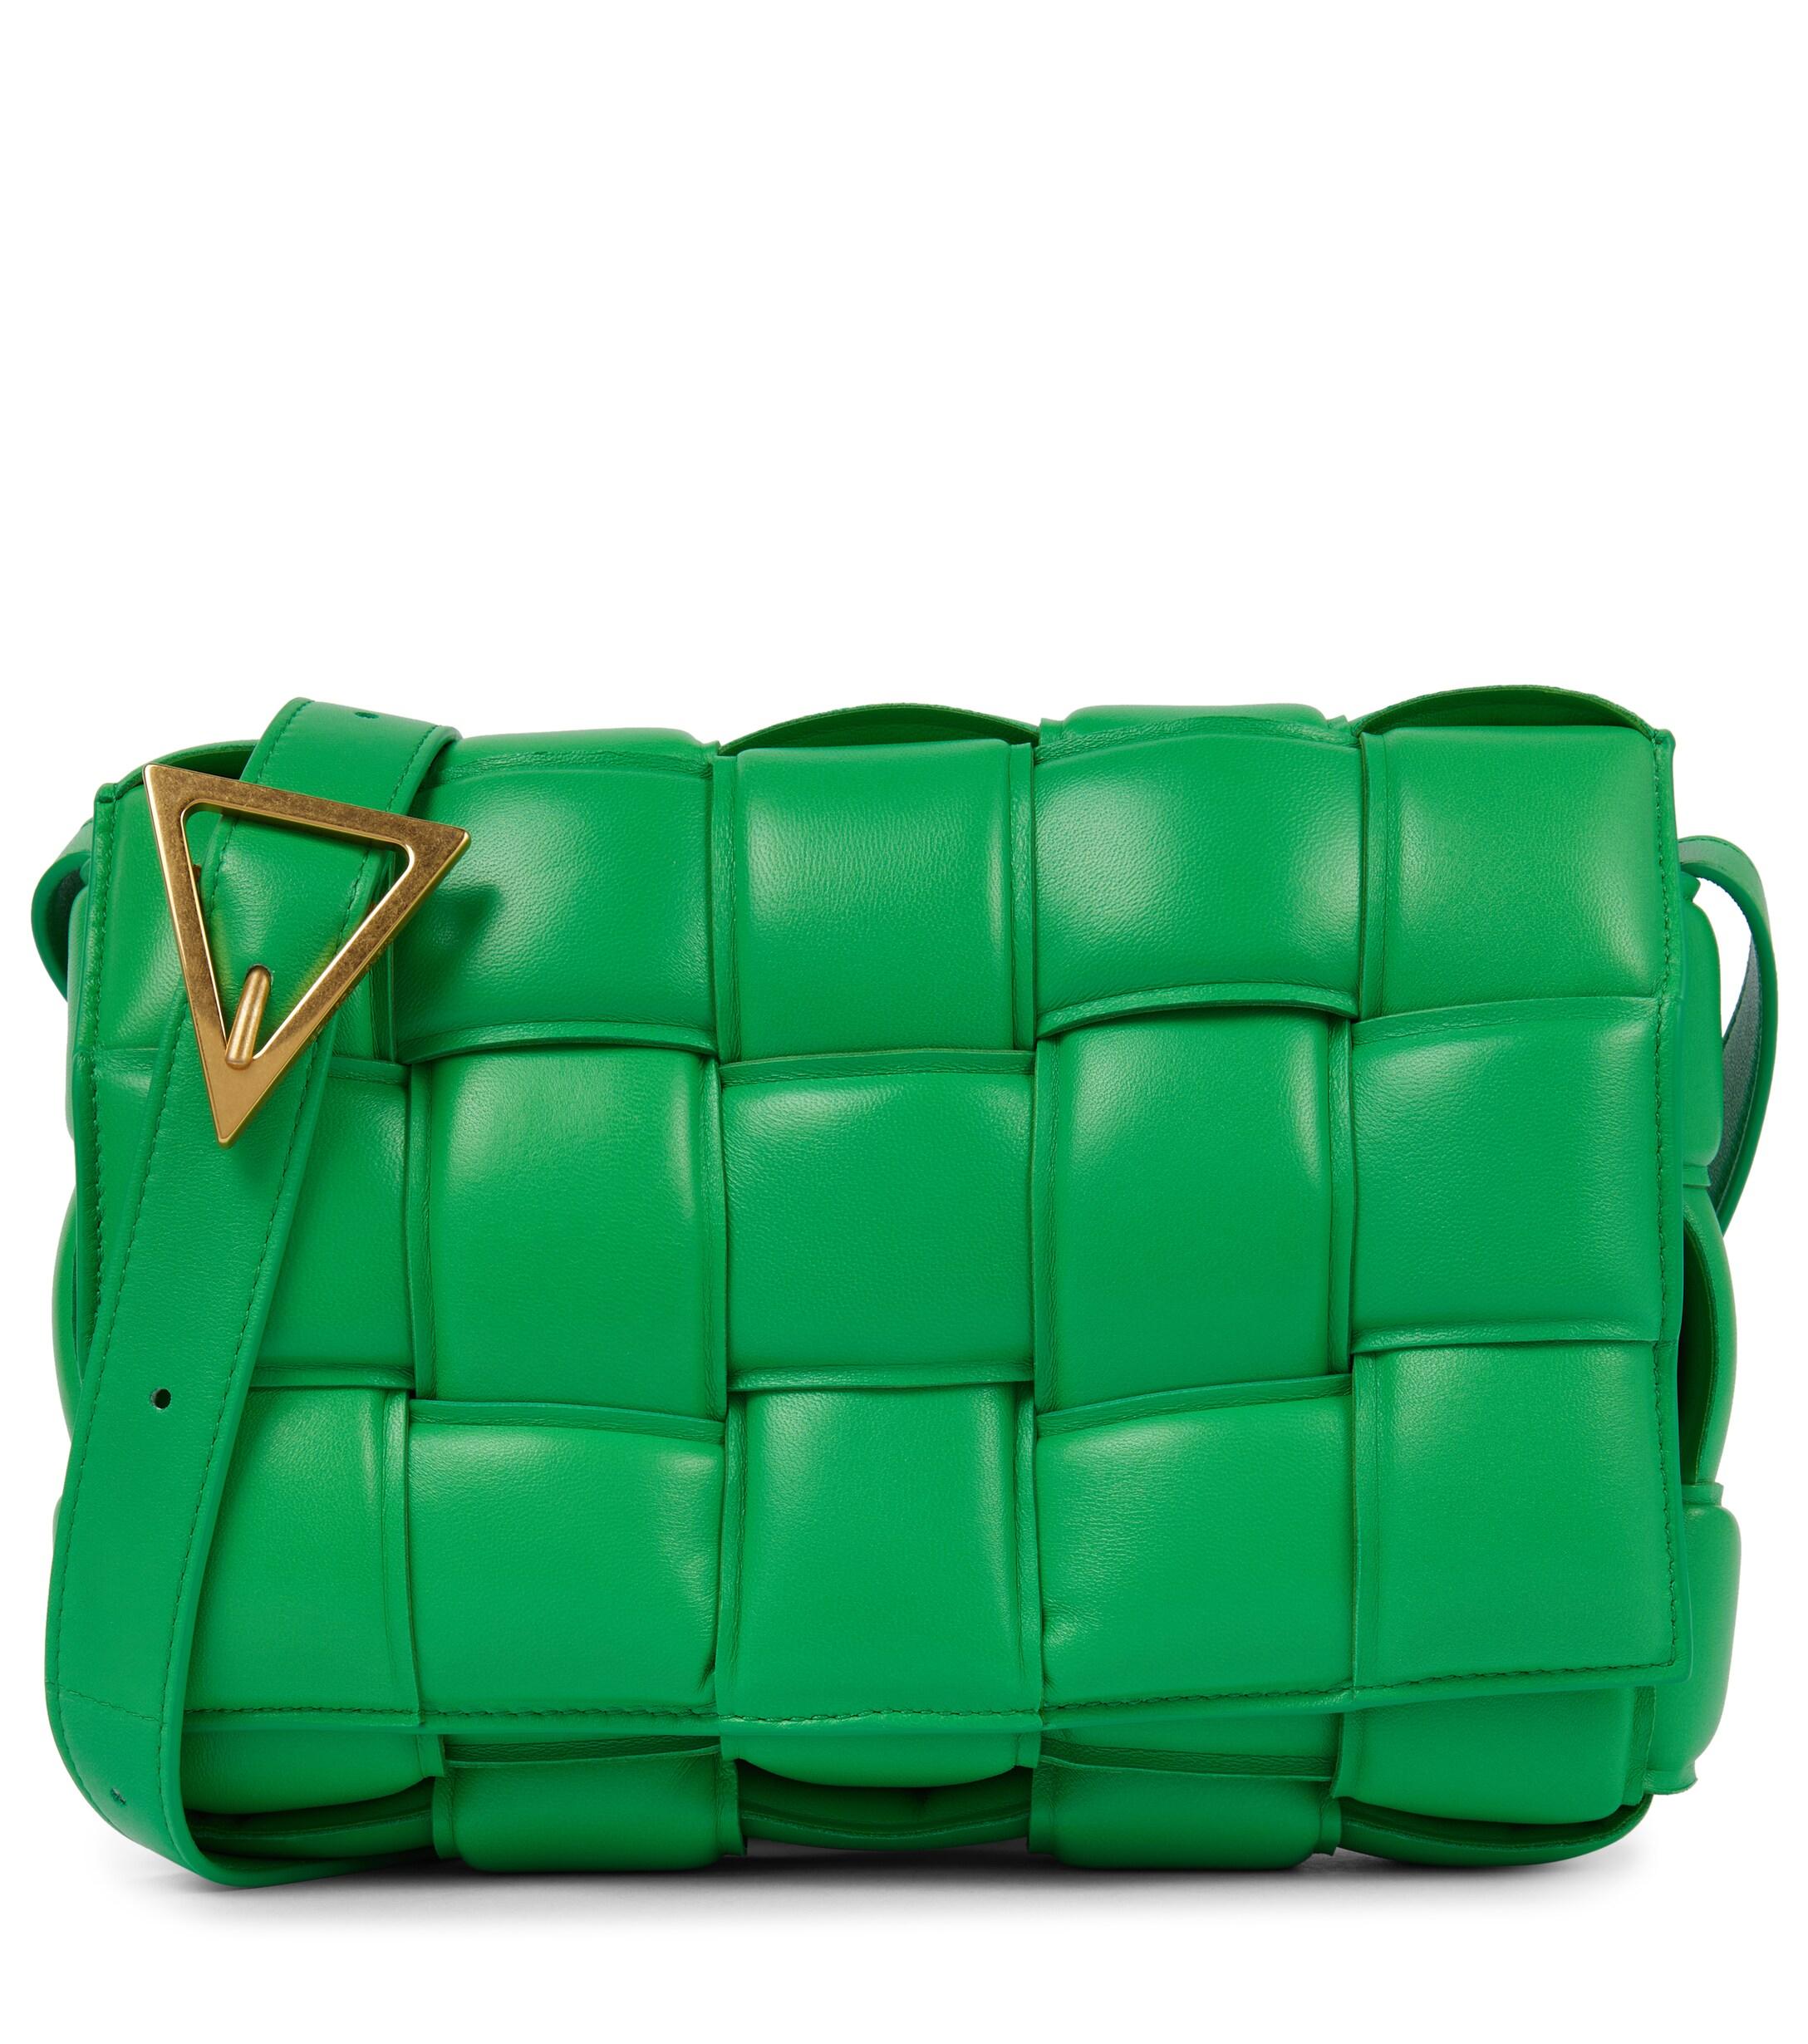 Bottega Veneta Padded Cassette Leather Shoulder Bag in Green | Lyst